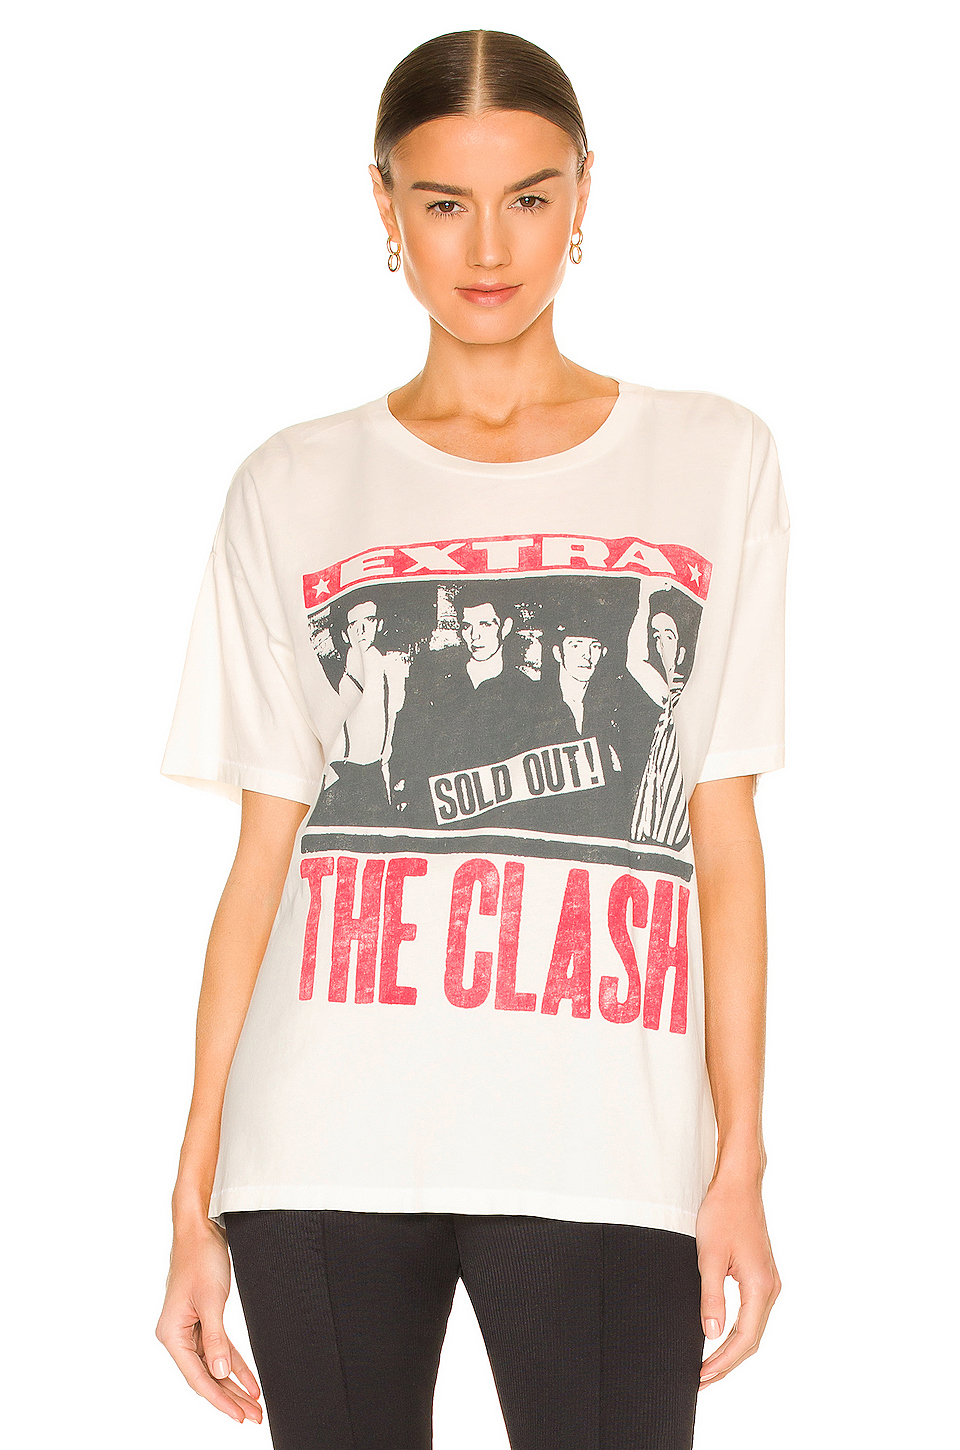 The Clash Merch Tee展示图